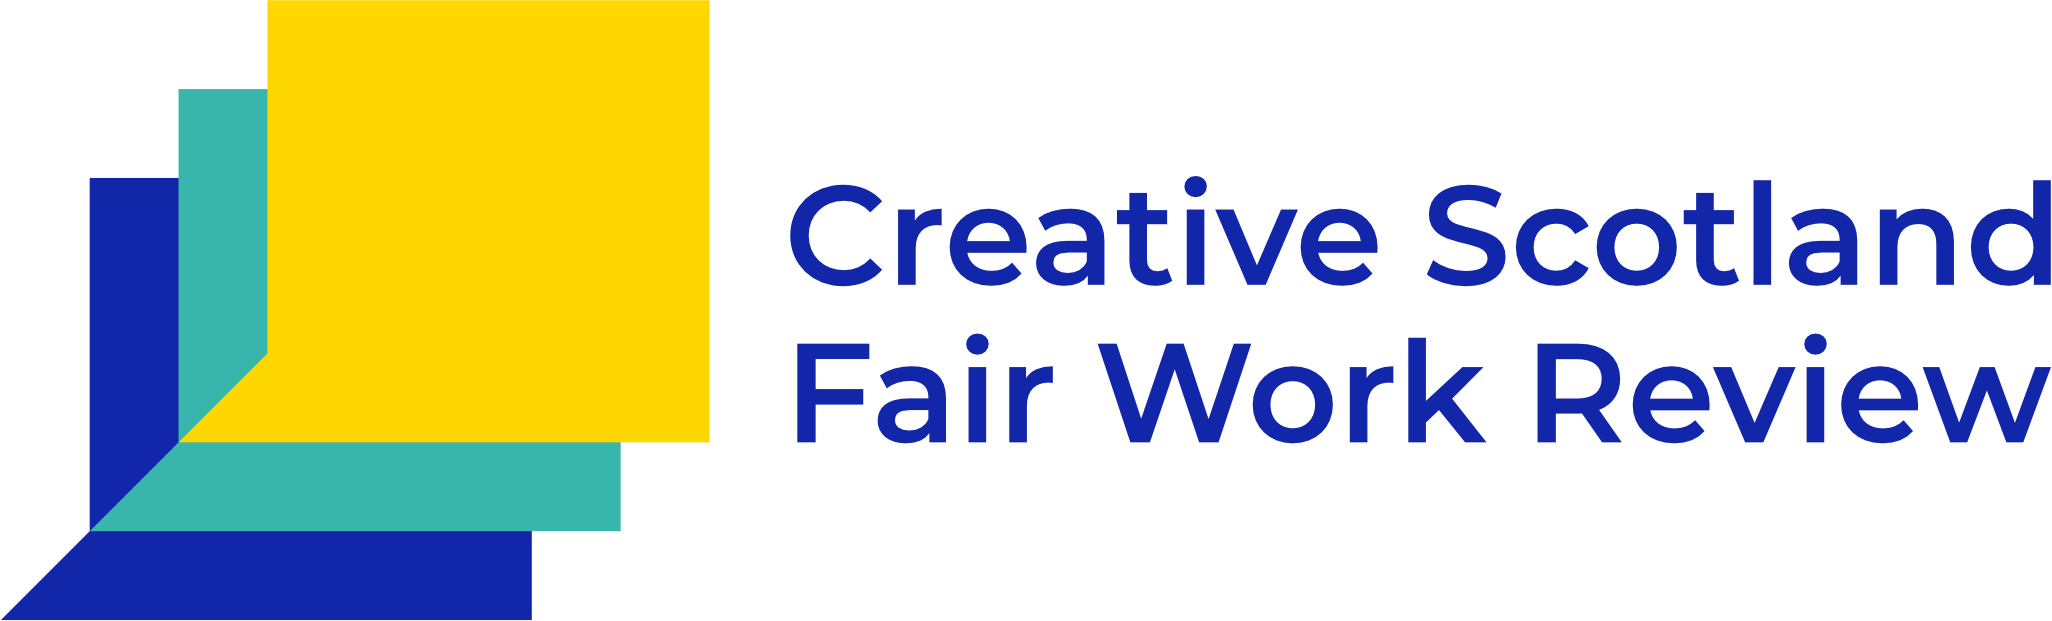 Creative Scotland Fair Work Review